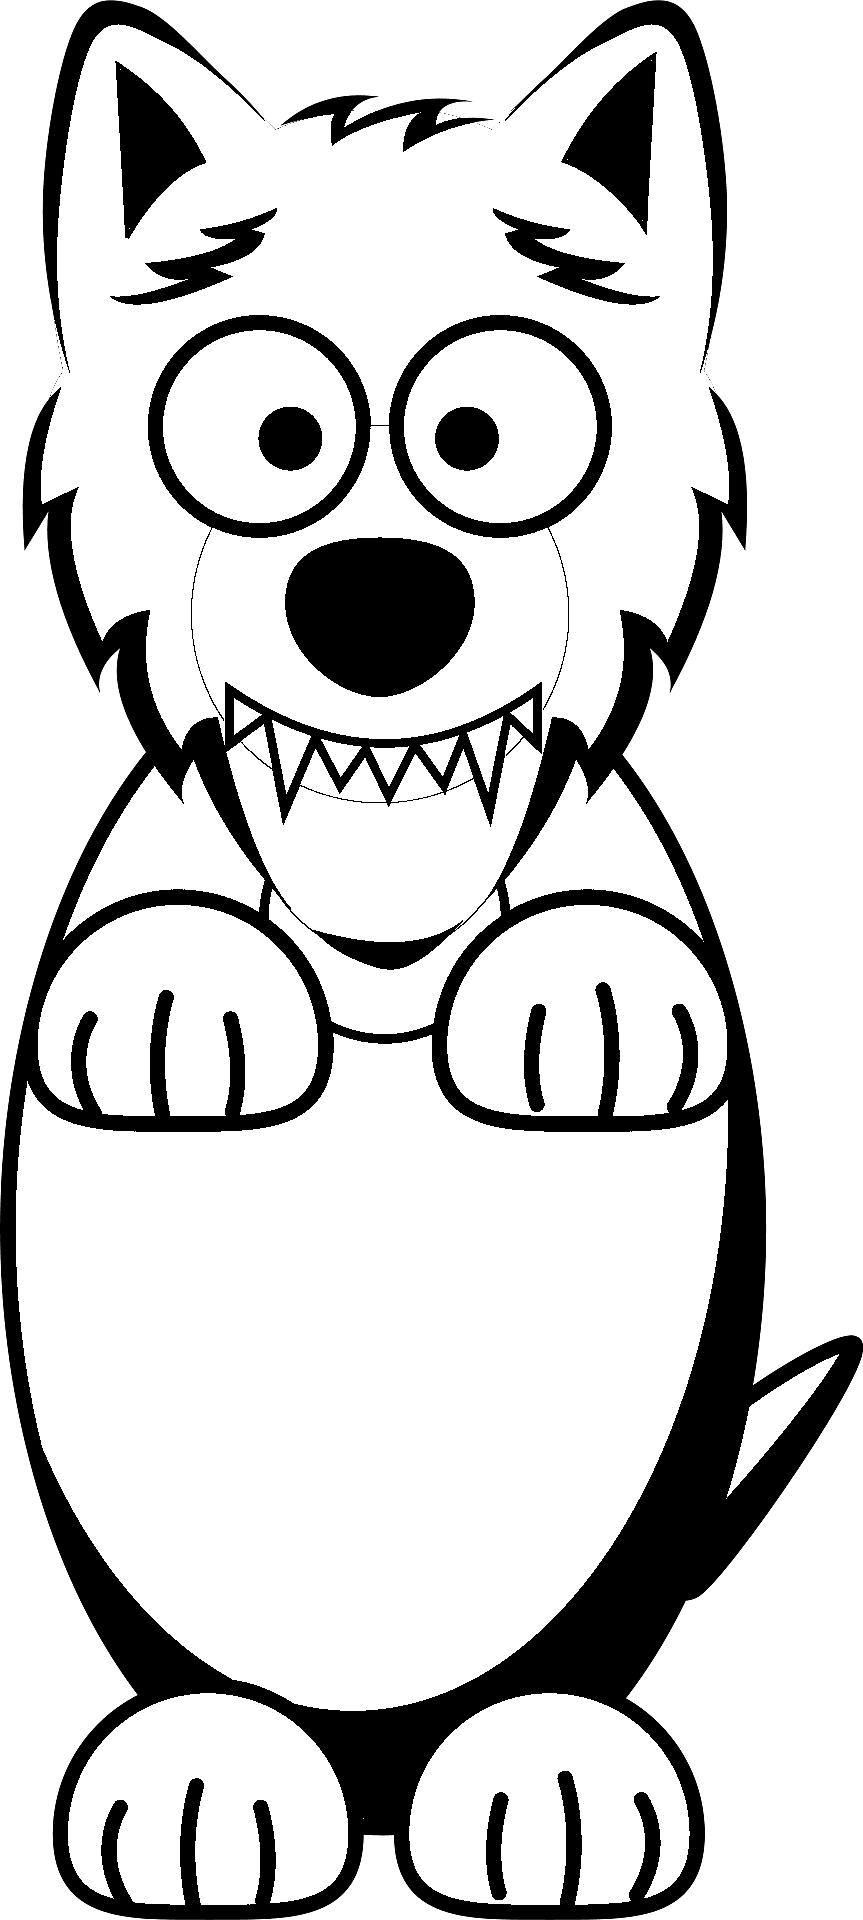 Malseite eines Wolfes im Cartoon-Stil